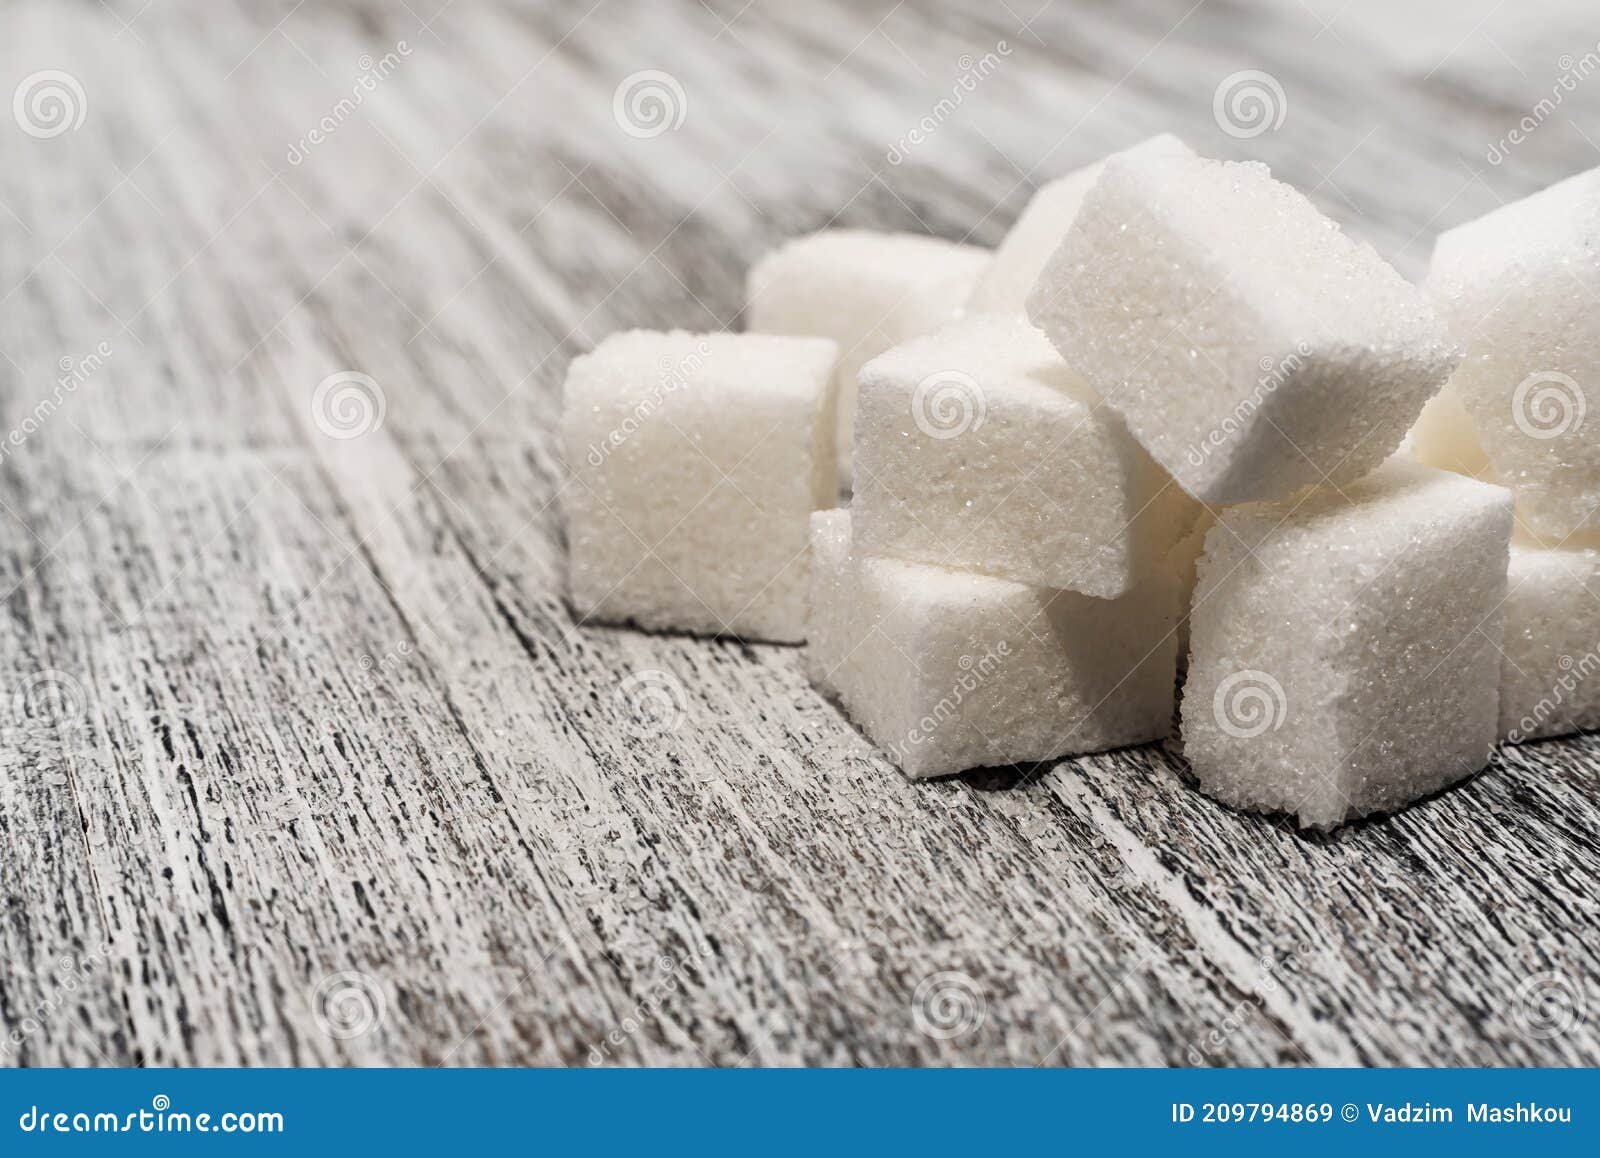 甘蔗糖块 — 可用作背景 库存图片. 图片 包括有 甜甜地, 食物, 多维数据集, 焦糖, 含糖, 岩石 - 184103775